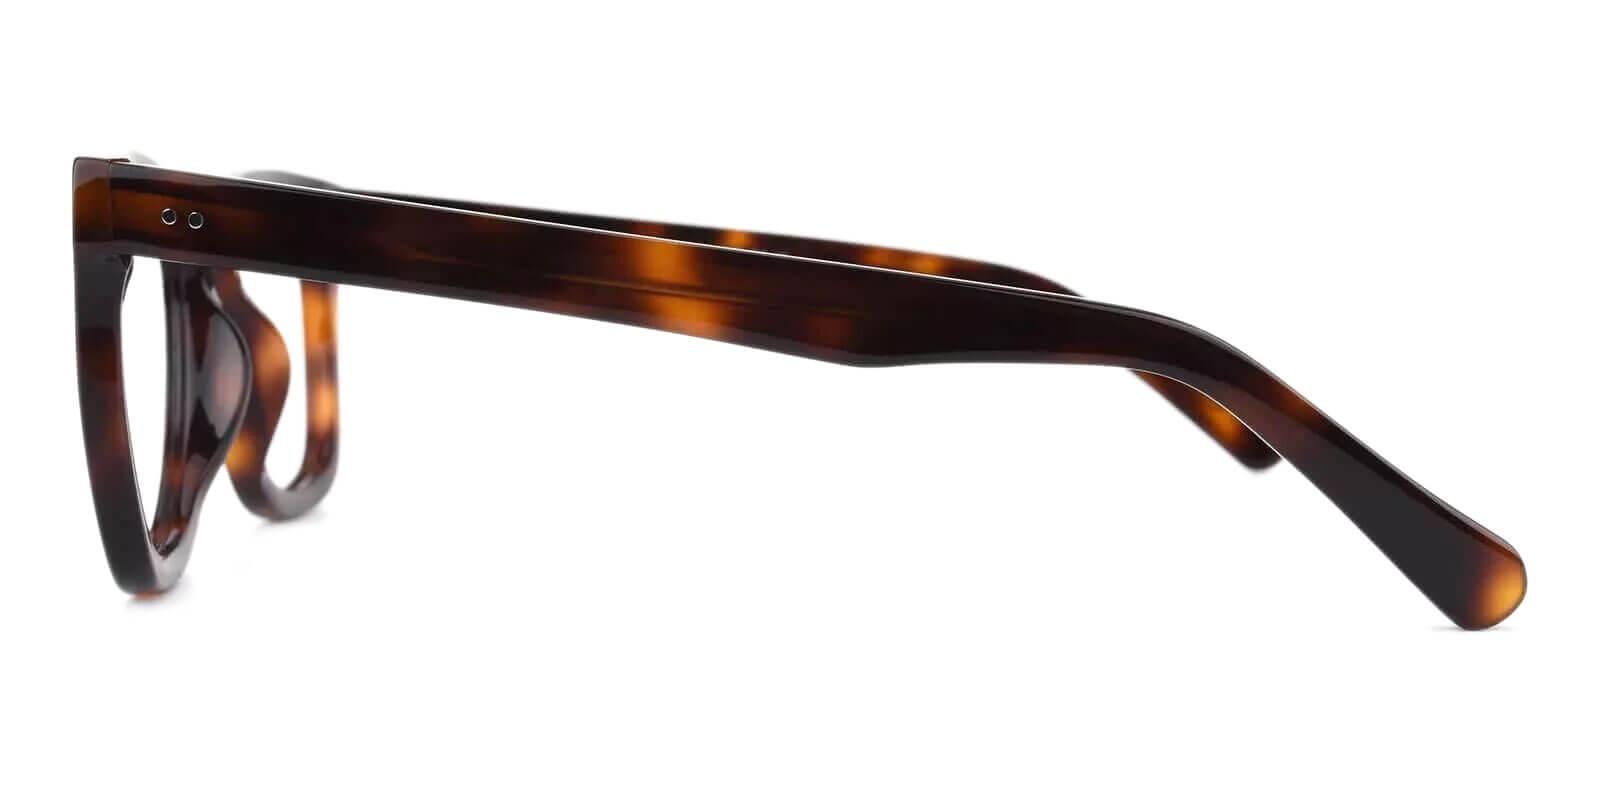 Dean Tortoise Acetate Eyeglasses , UniversalBridgeFit Frames from ABBE Glasses